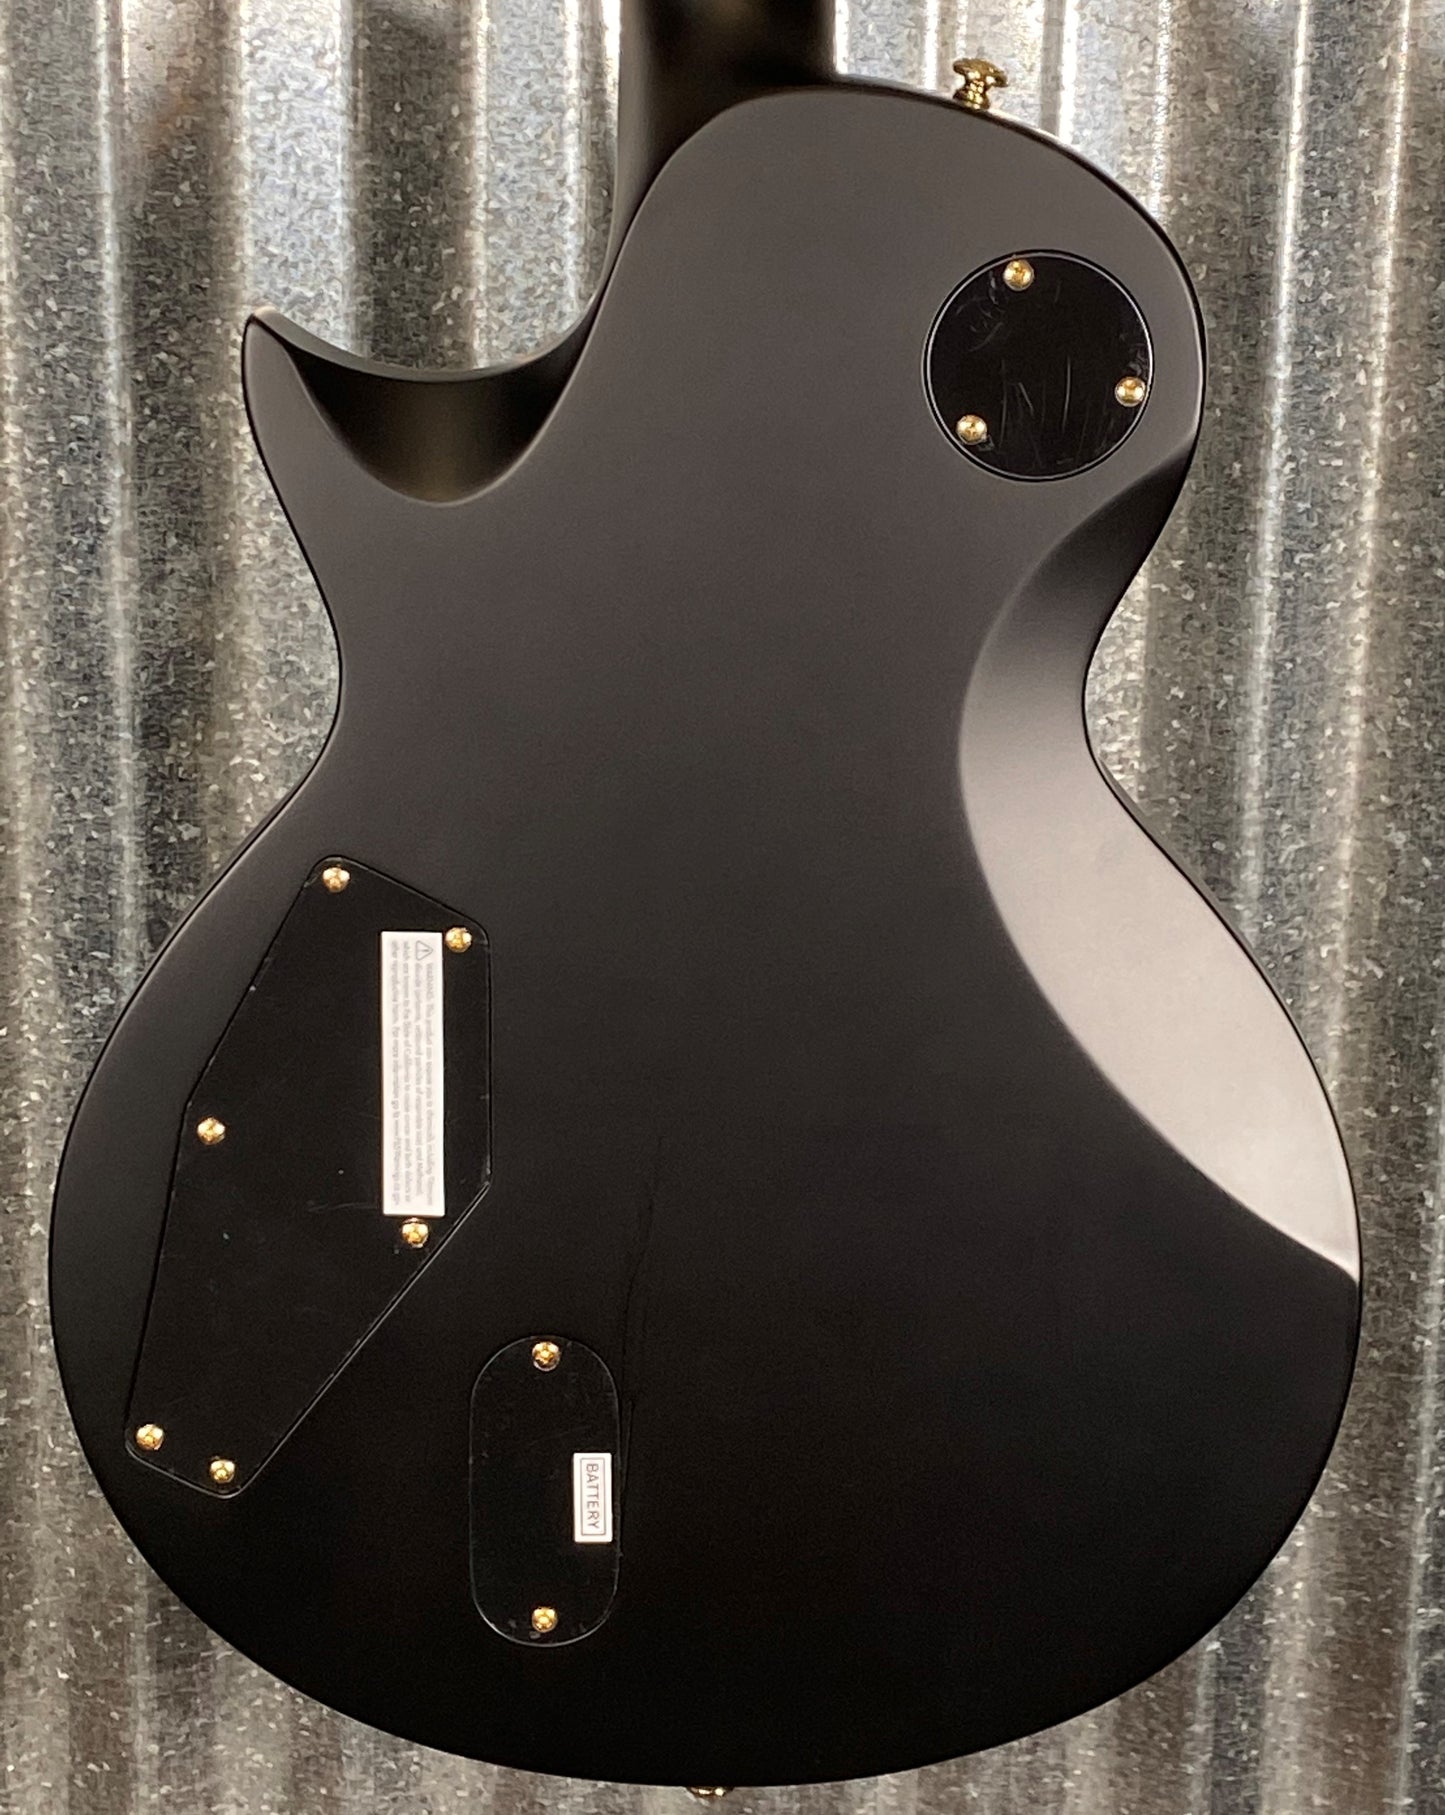 ESP LTD EC-1000 Eclipse EMG Vintage Black Guitar & Bag LEC1000VB #1879 Used